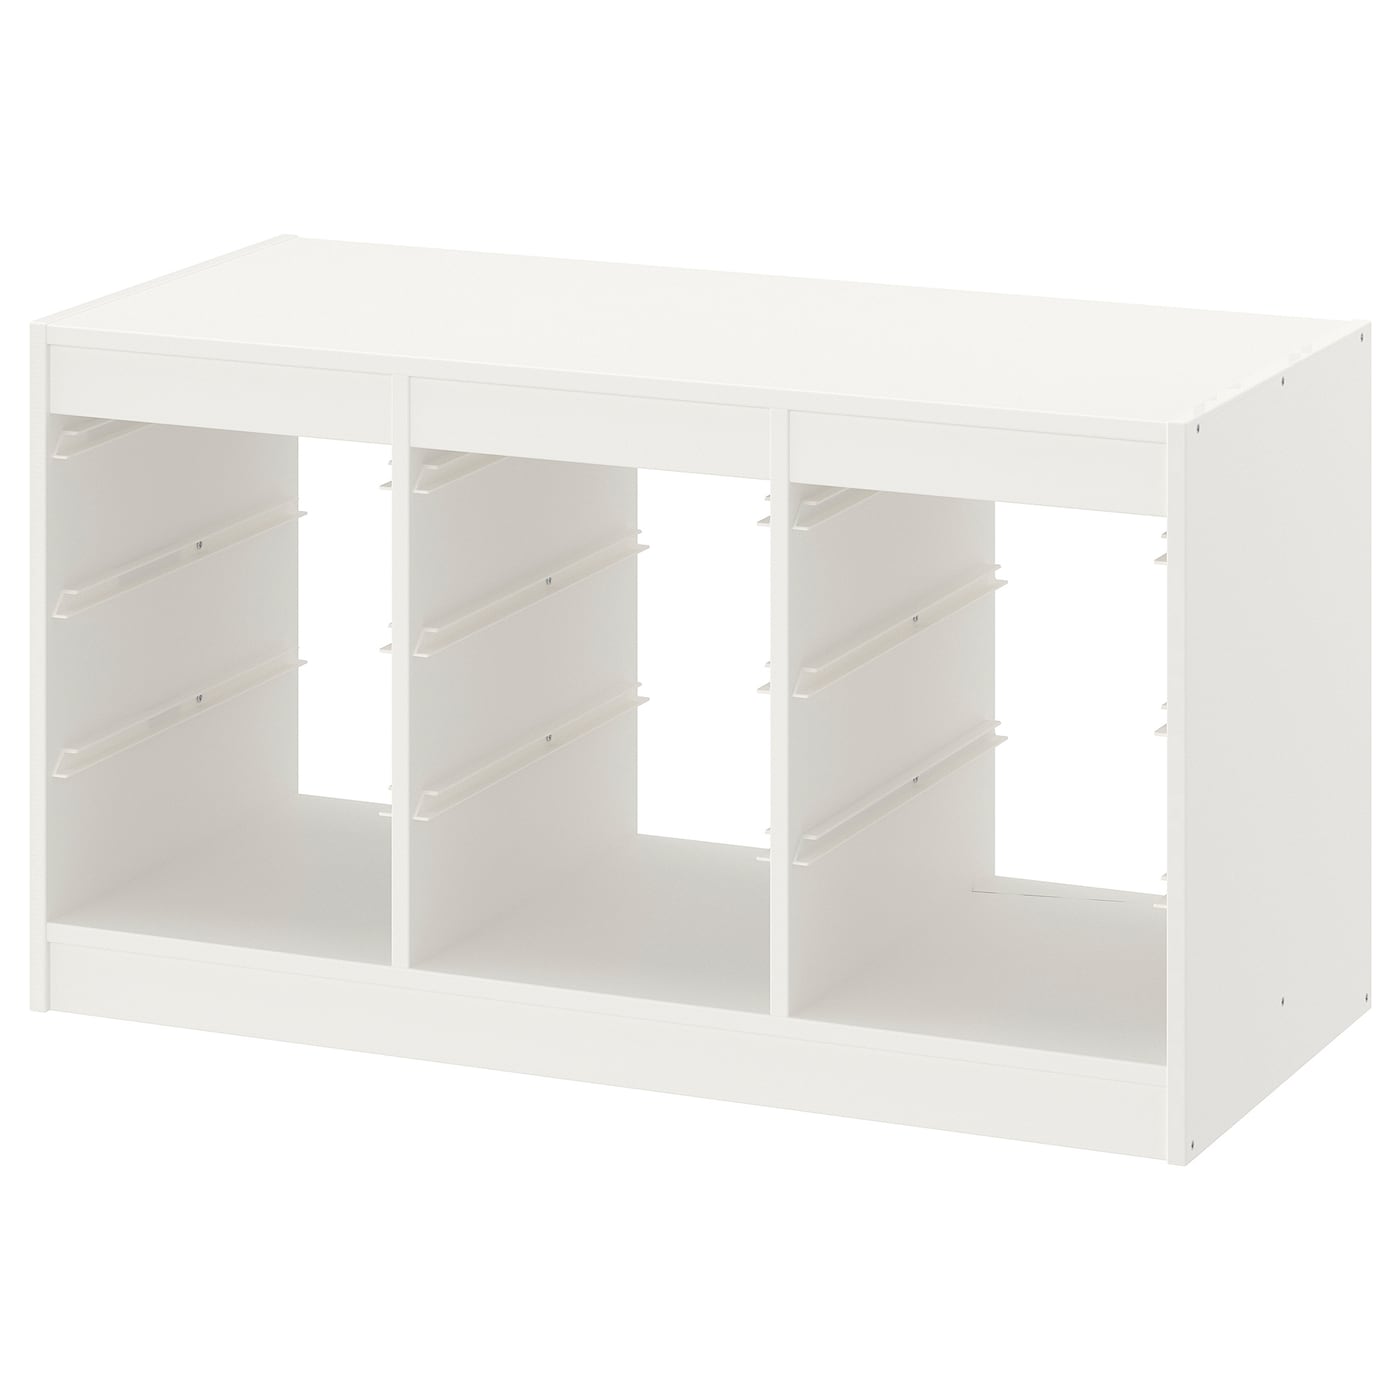 Каркас стеллажа - IKEA TROFAST, 99х44х56 см, белый, ТРУФАСТ ИКЕА